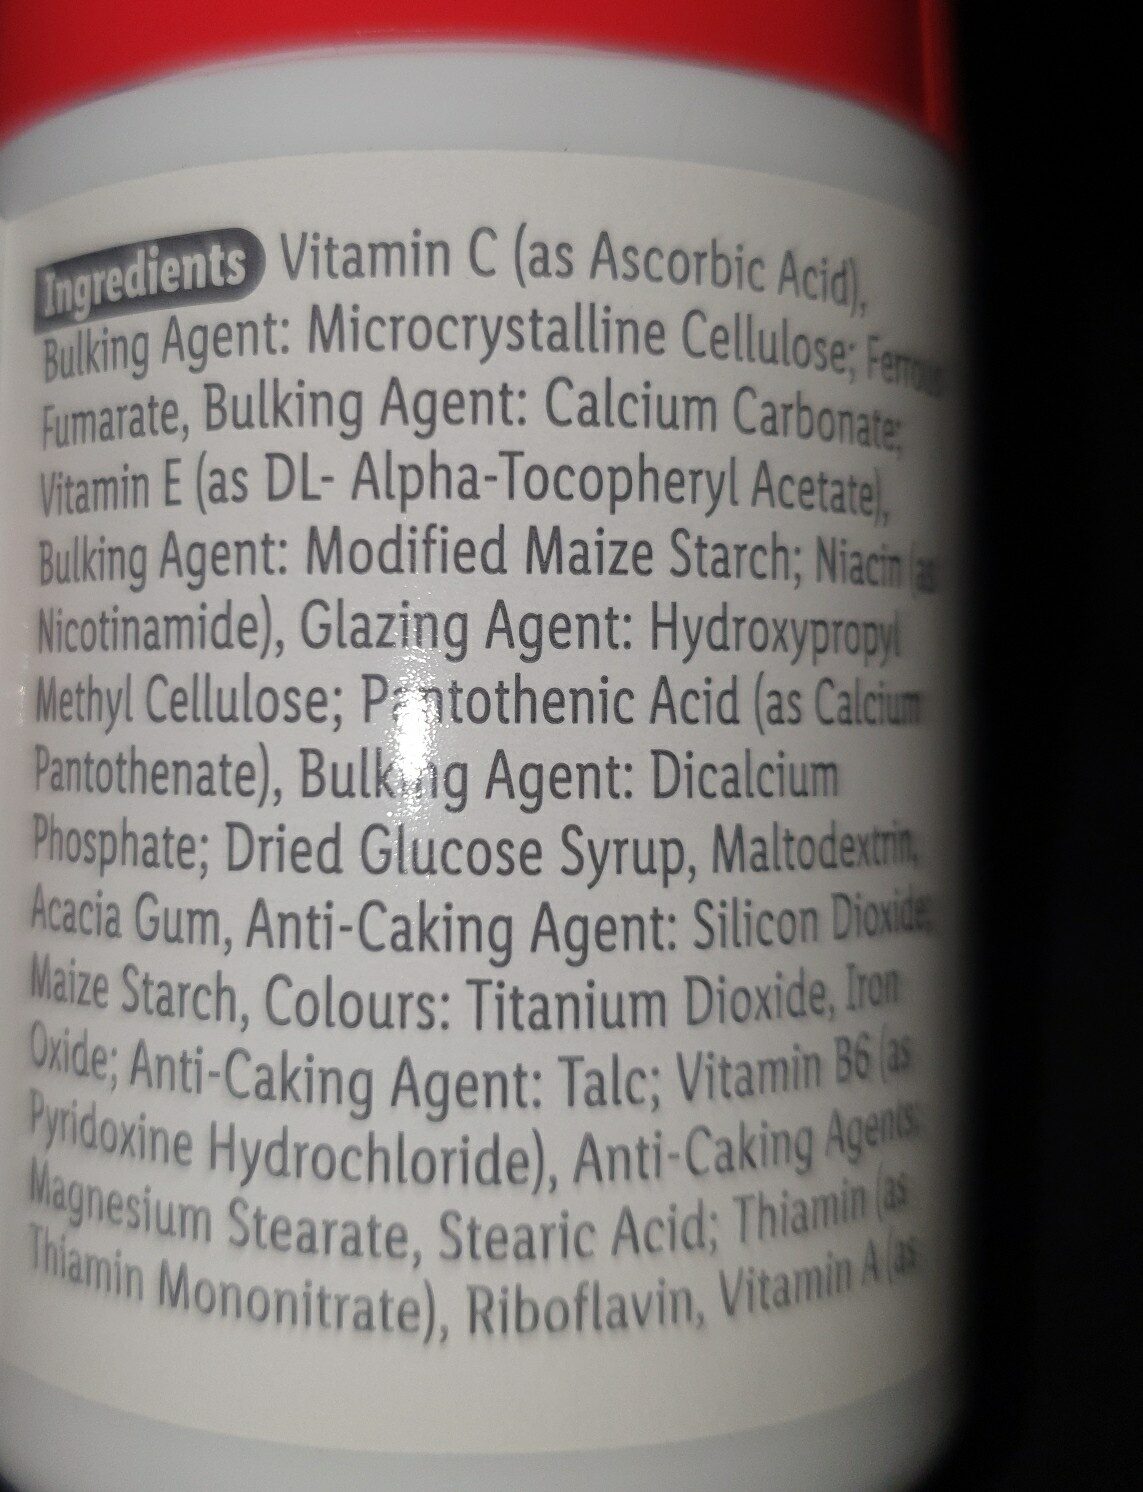 minavit - Ingredients